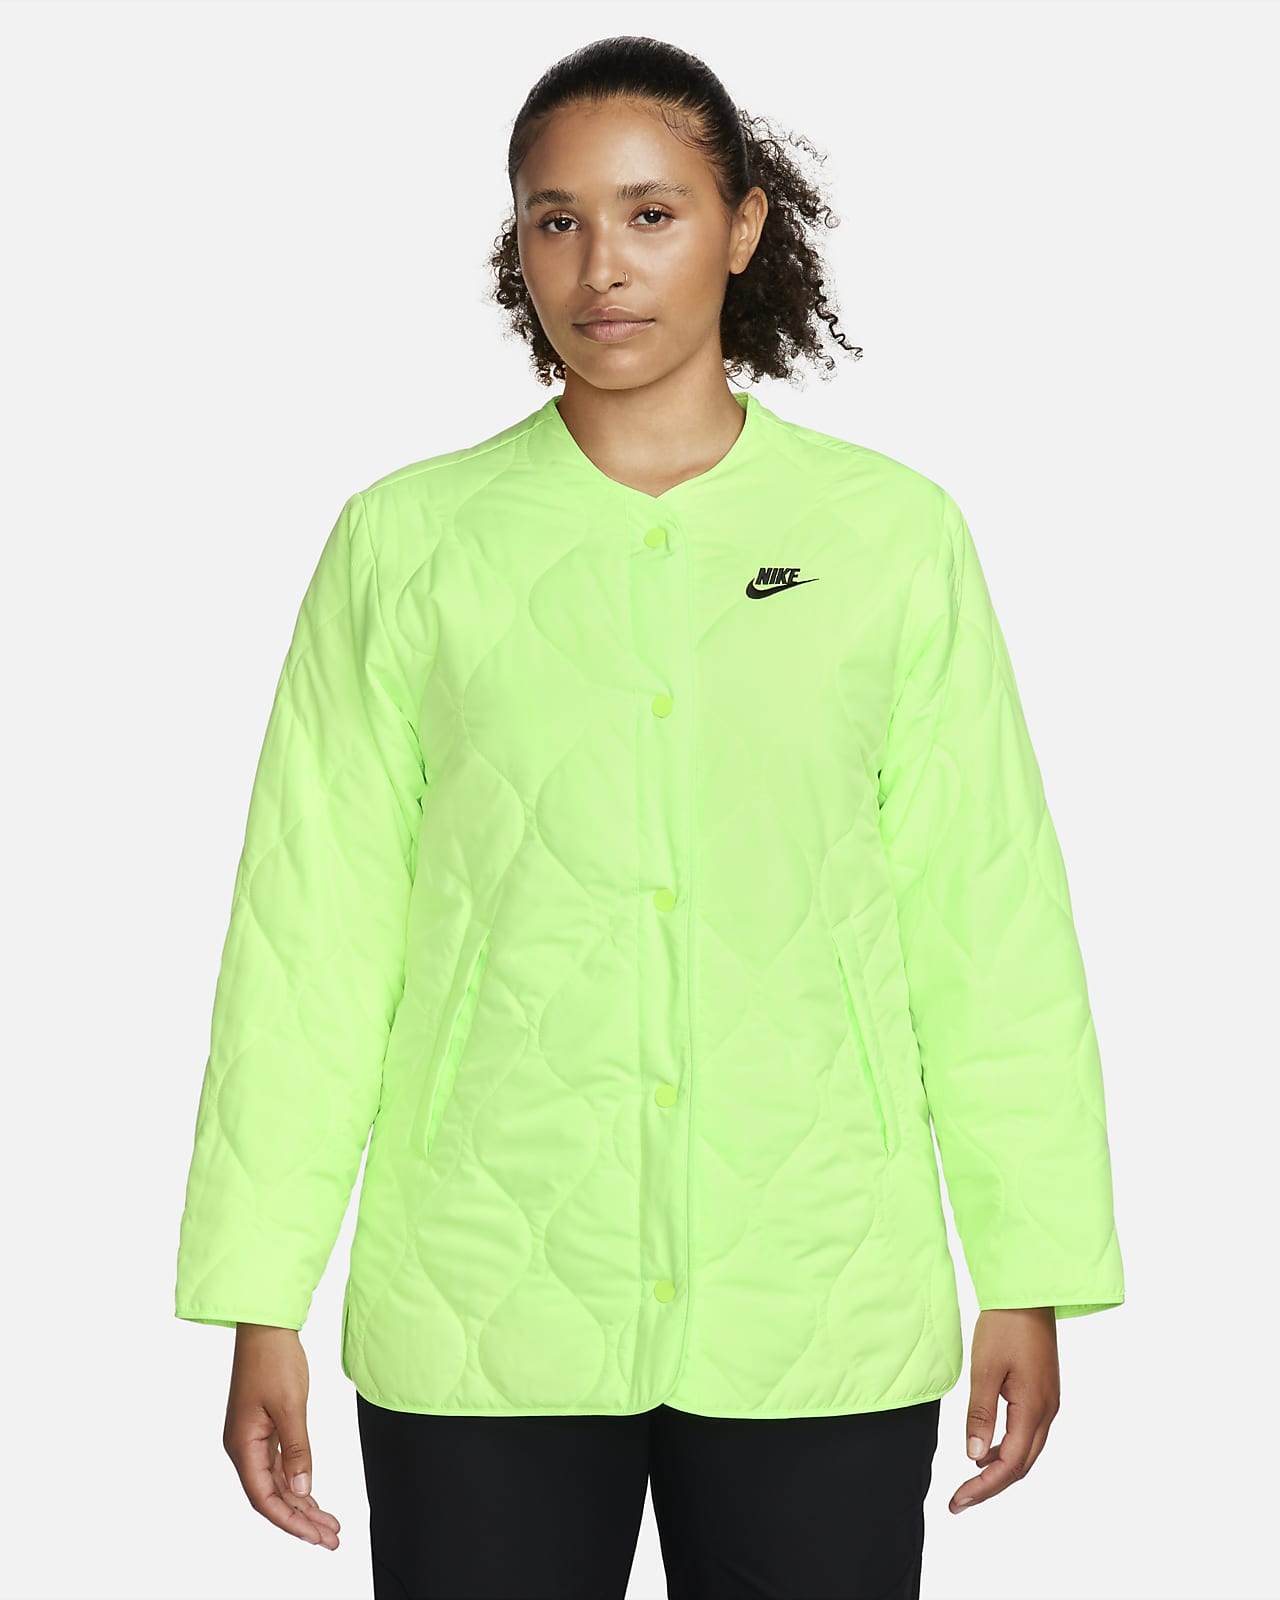 Nike | Jackets & Coats | Womens White Nike Sports Jacket | Poshmark